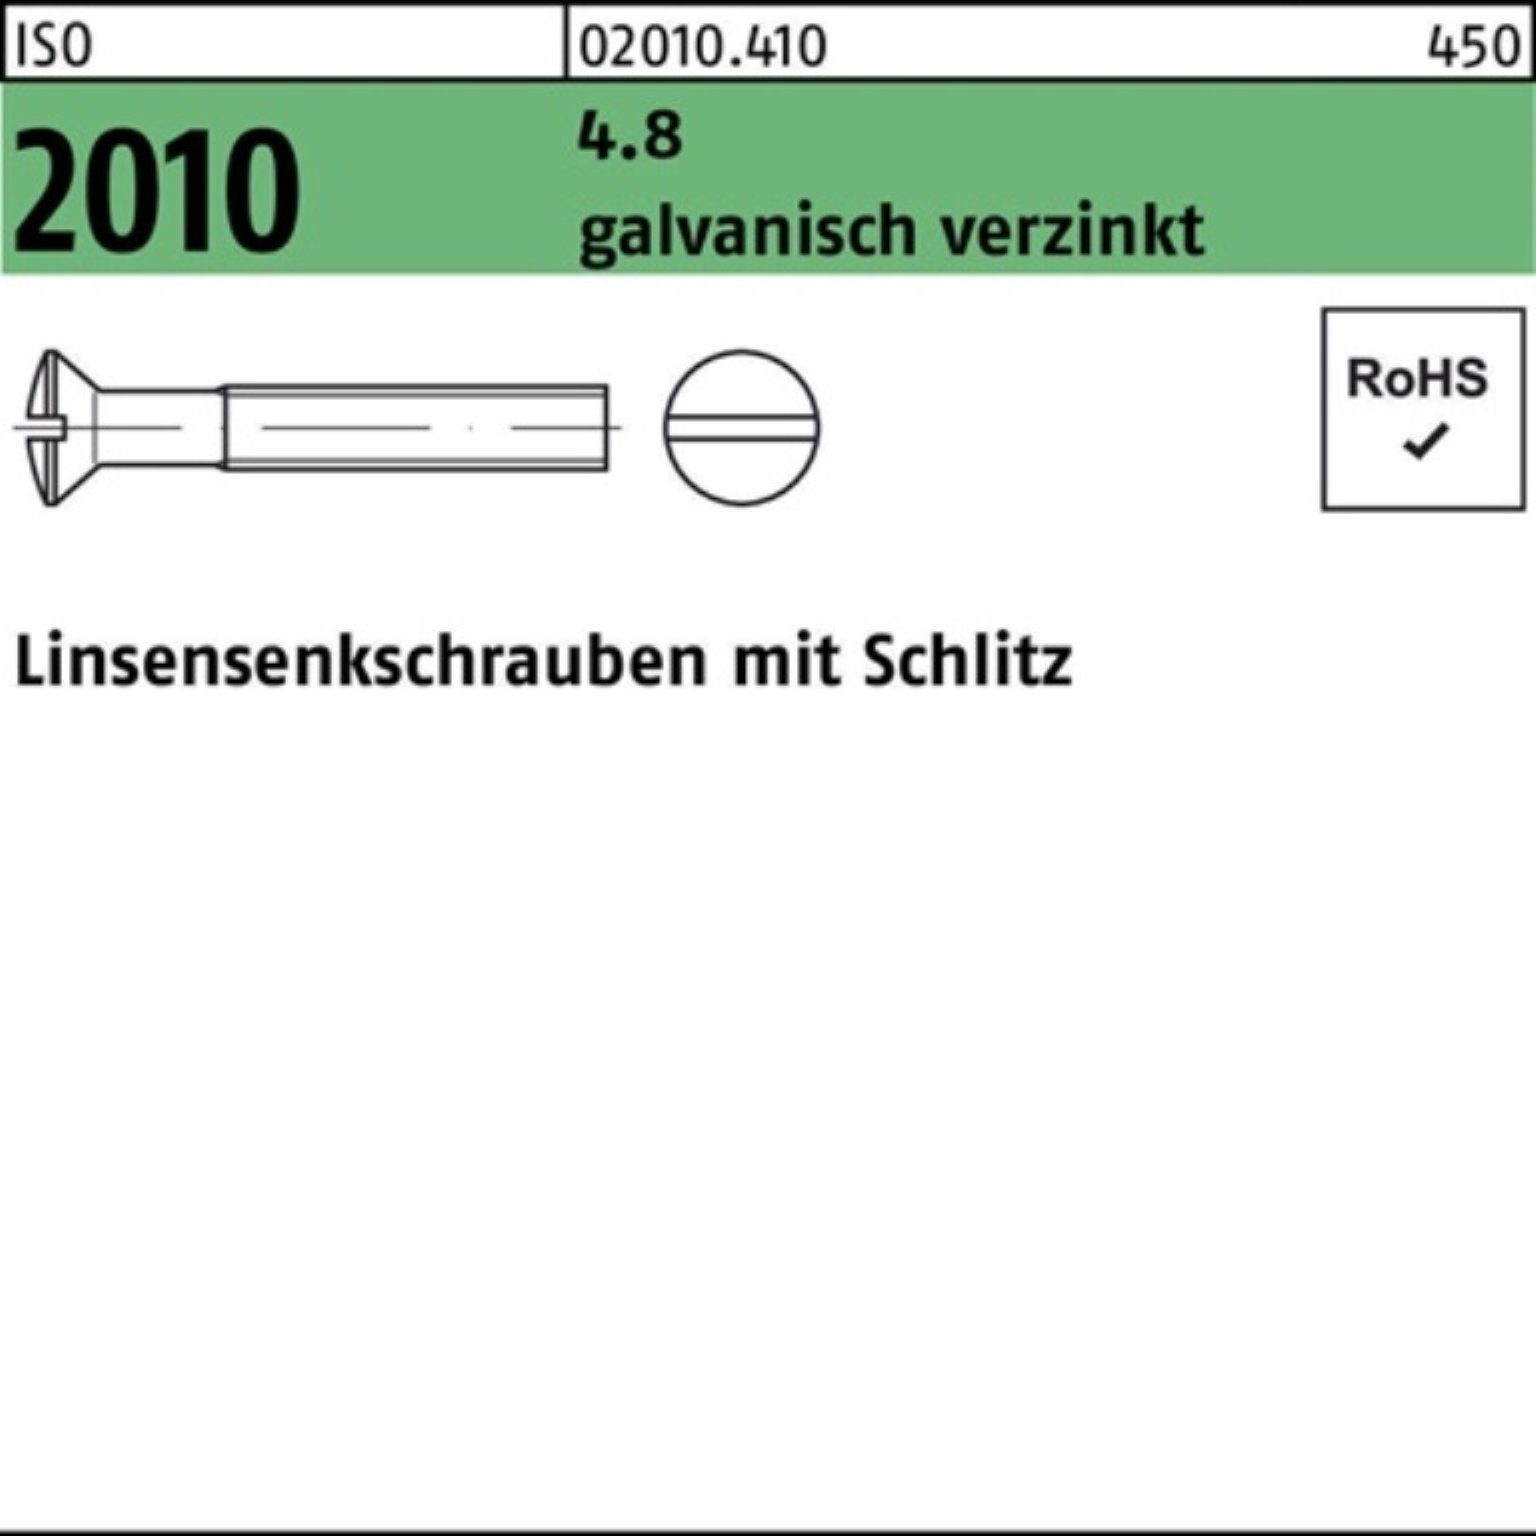 [Super niedriger Preis erzielt] Reyher Linsenschraube 1000er Pack Linsensenkschraube M6x 20 Schlitz 4.8 ISO galv.verz. 2010